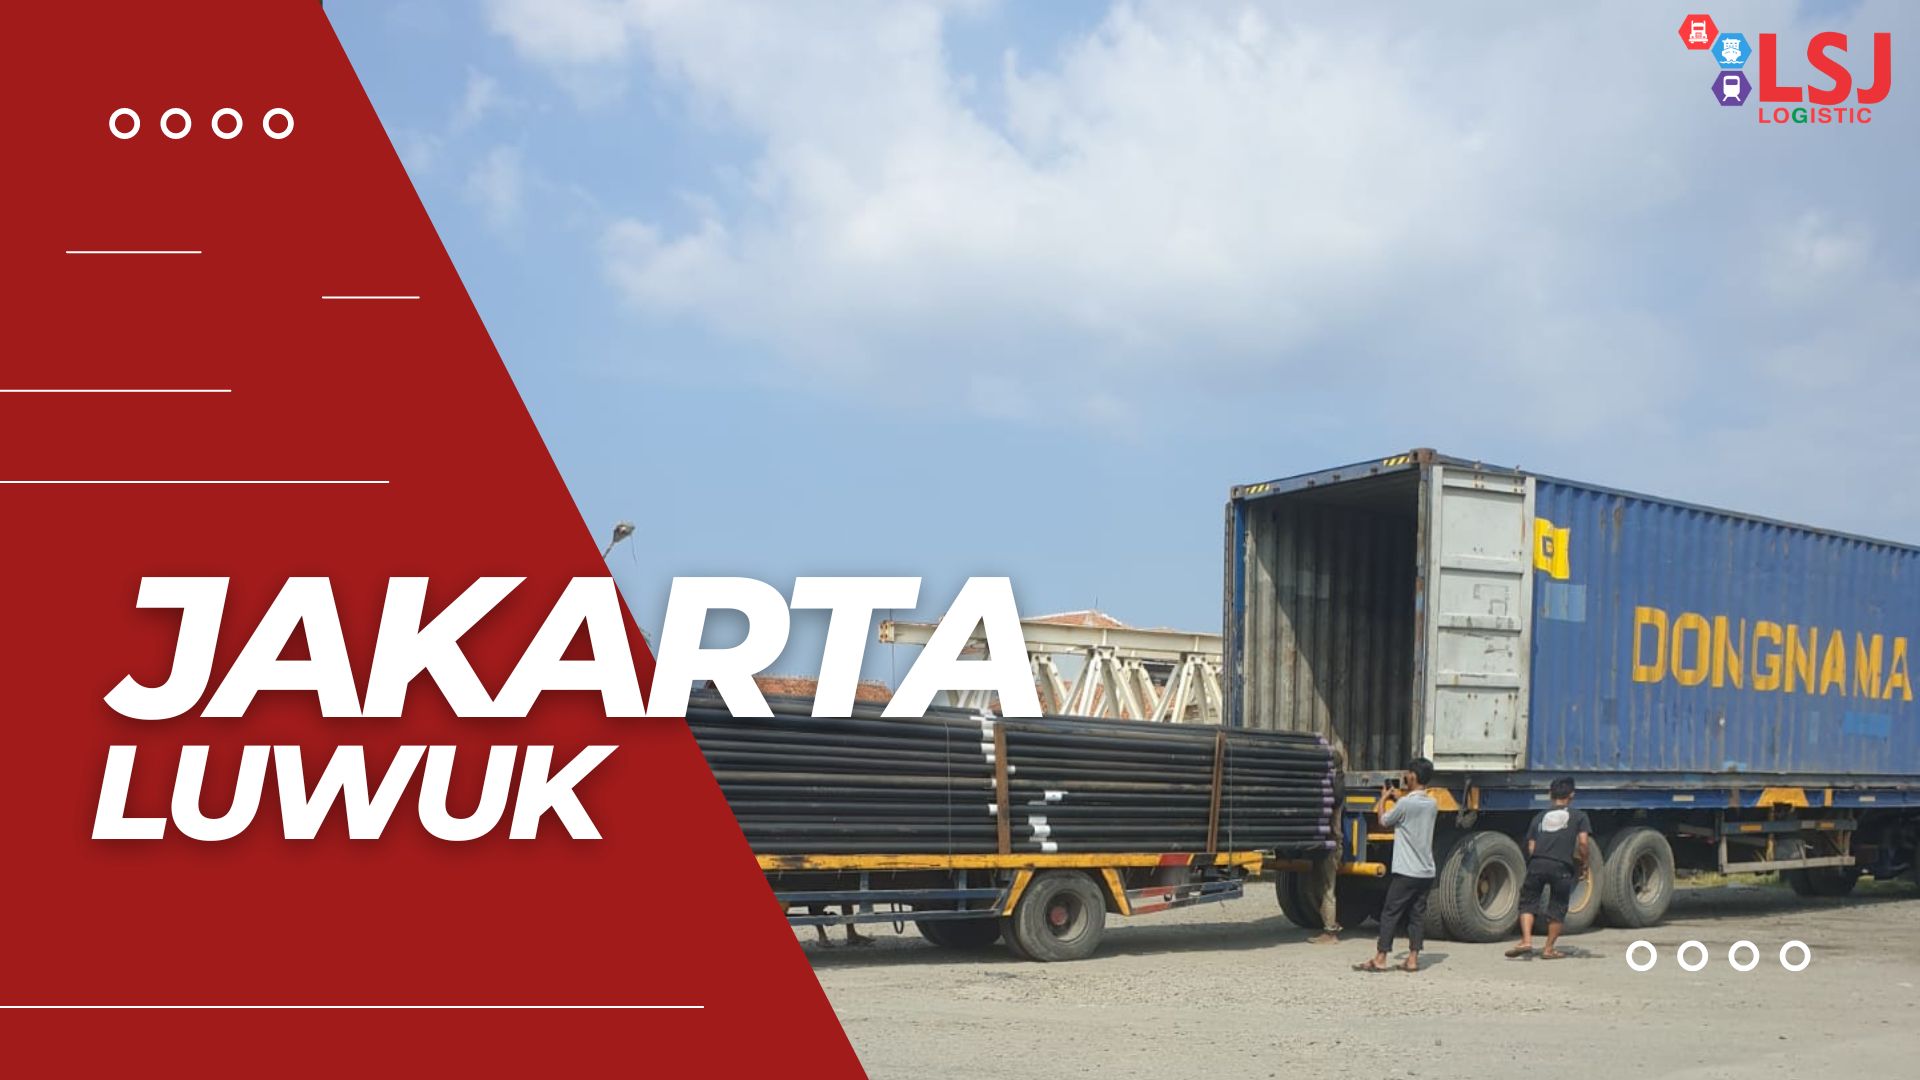 Ongkos Kirim Container Jakarta Luwuk